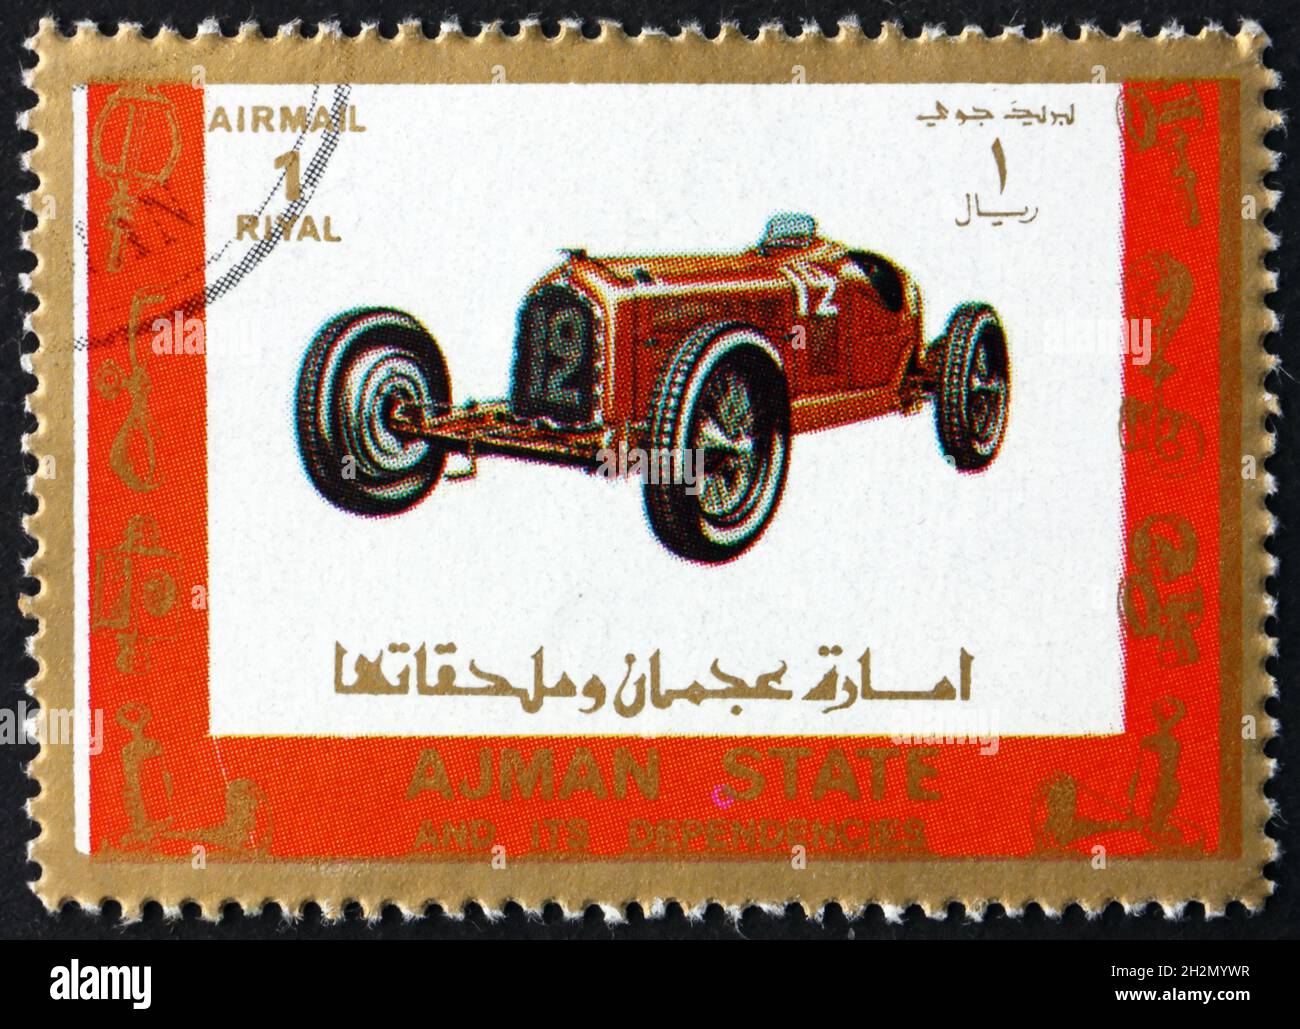 AJMAN - CIRCA 1973: a stamp printed in Ajman shows old racing car, circa 1973 Stock Photo